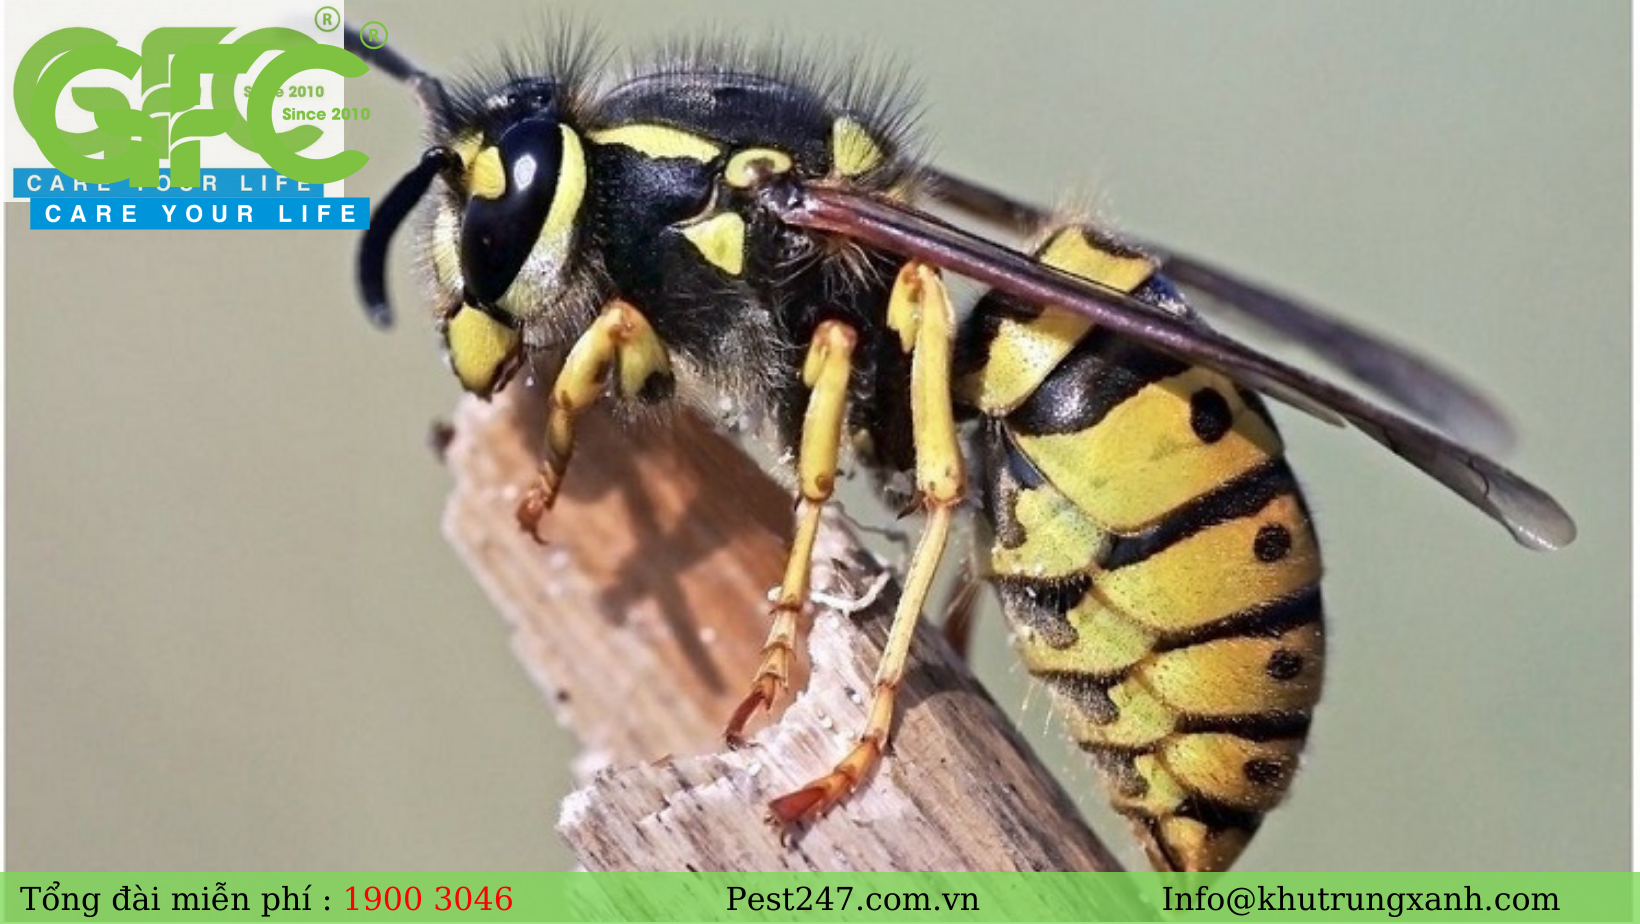 REVIEW tất tần tật các loài ong gây hại phổ biến ở Việt Nam